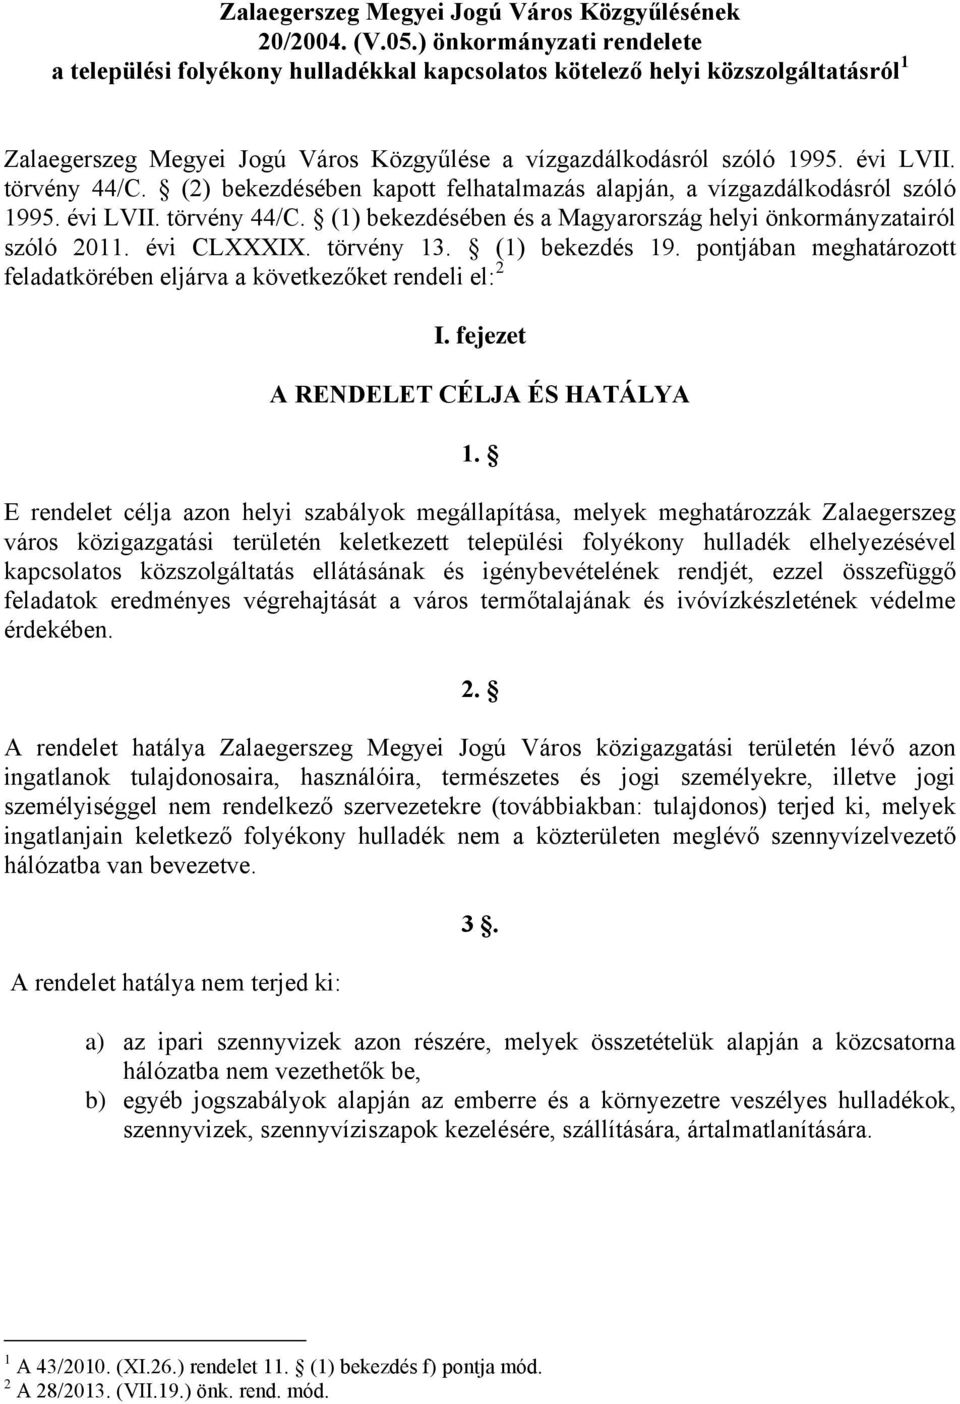 törvény 44/C. (2) bekezdésében kapott felhatalmazás alapján, a vízgazdálkodásról szóló 1995. évi LVII. törvény 44/C. (1) bekezdésében és a Magyarország helyi önkormányzatairól szóló 2011. évi CLXXXIX.